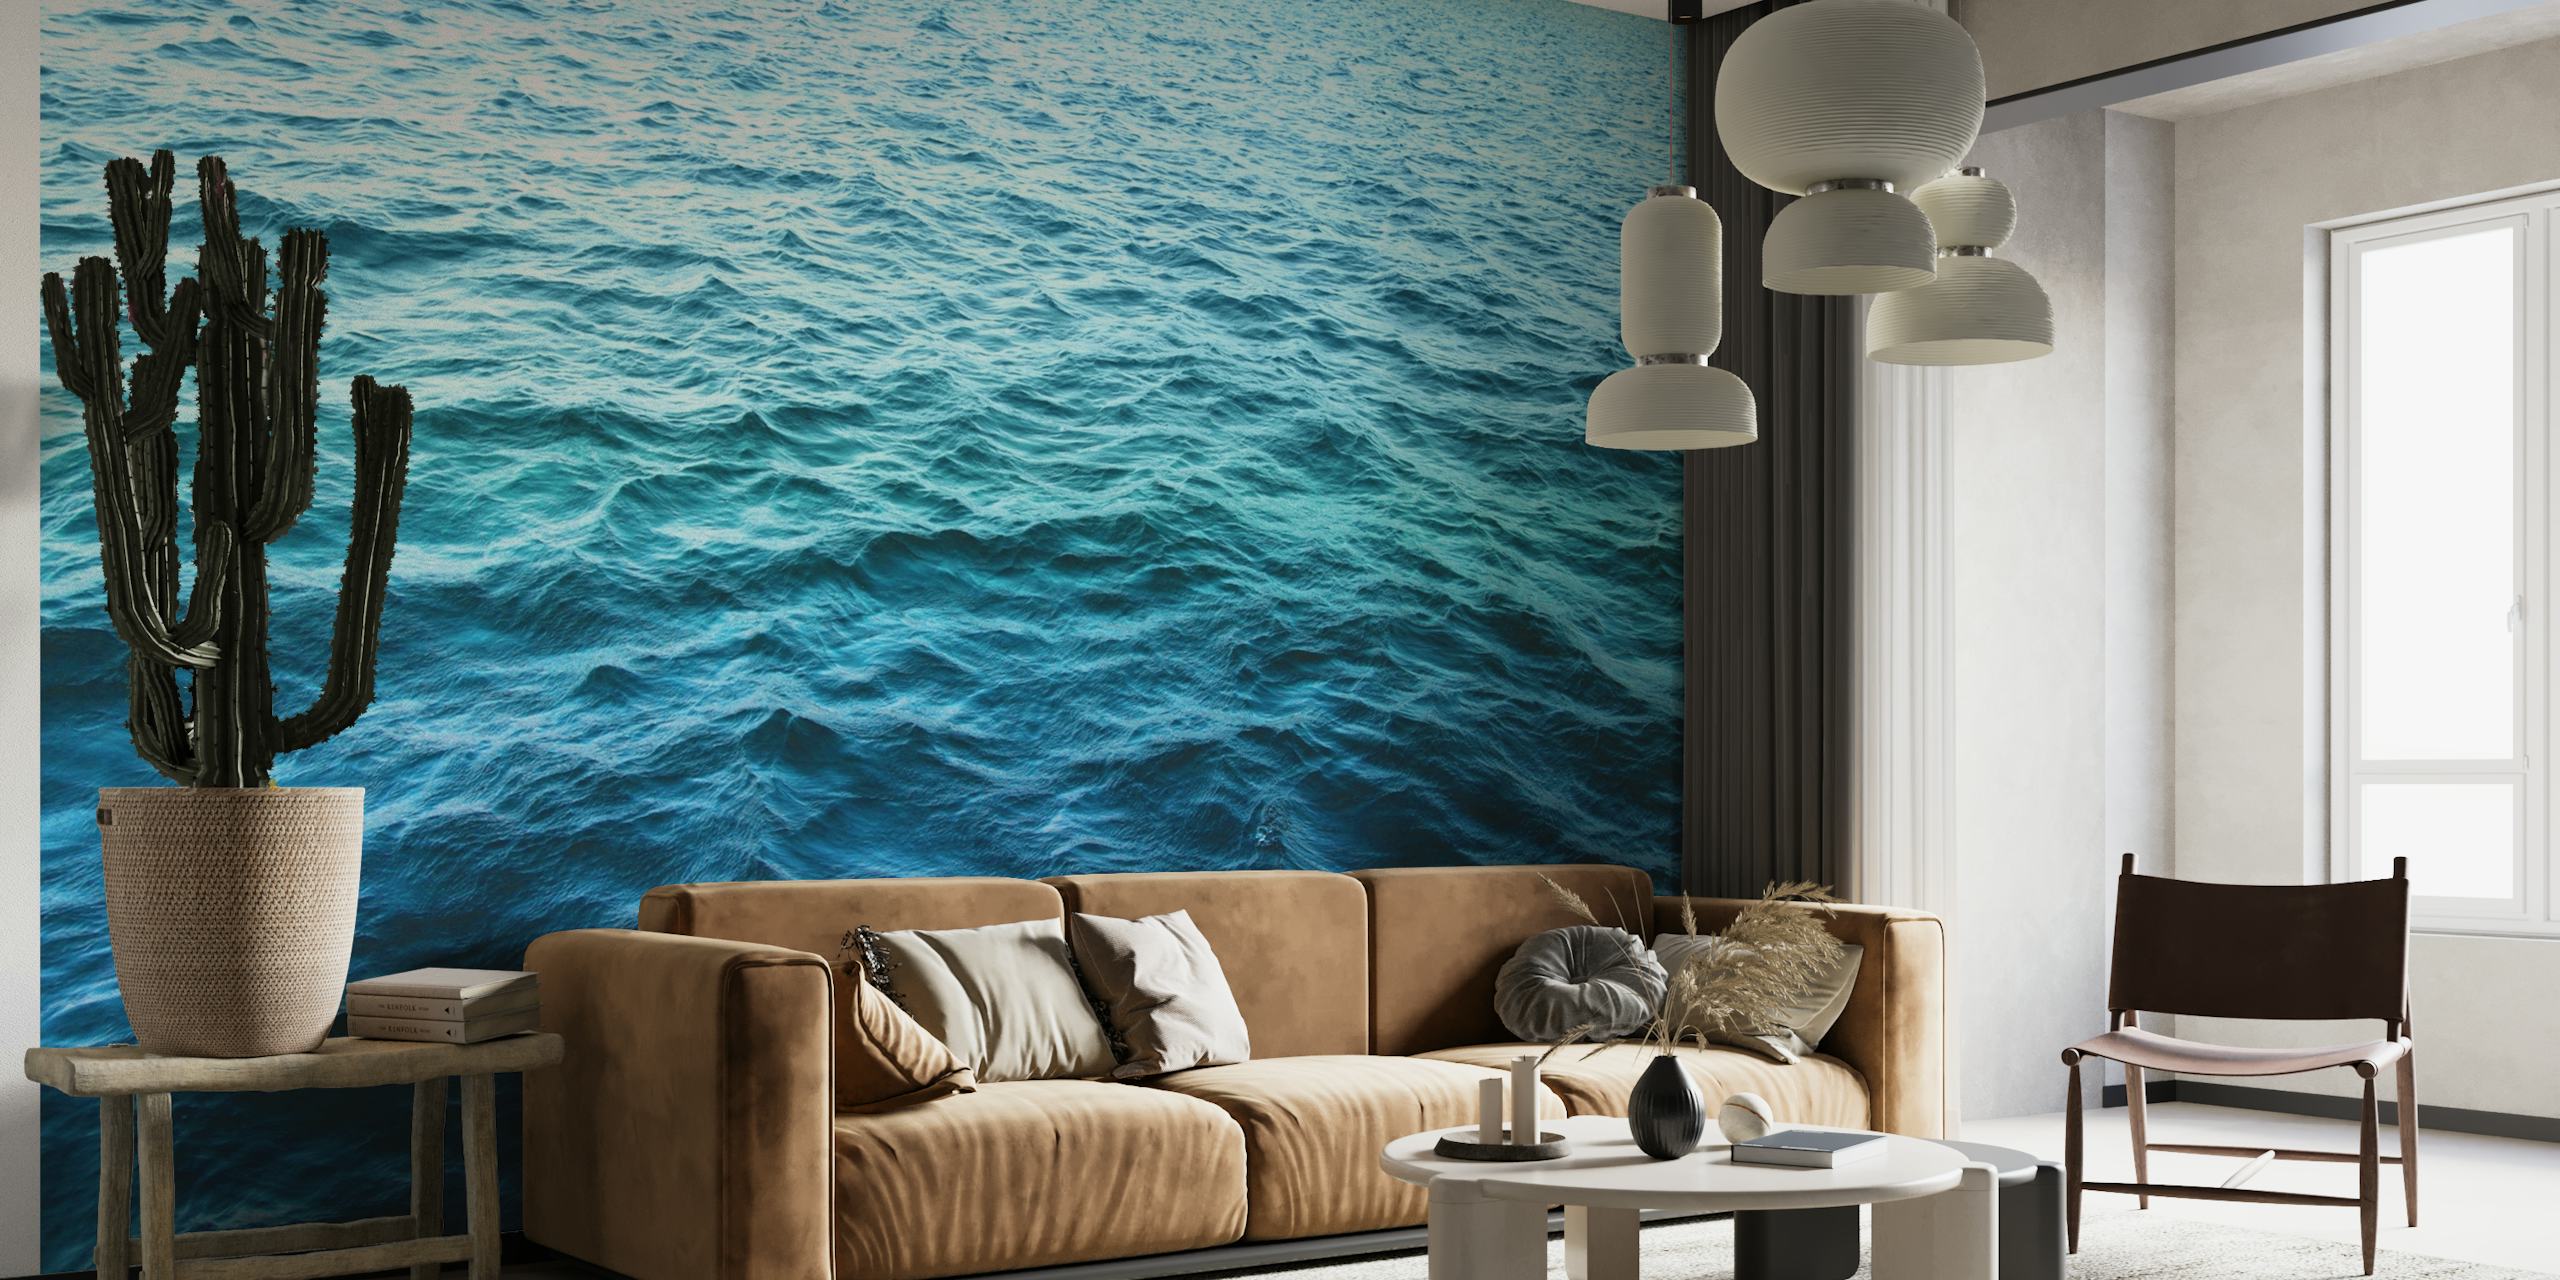 The Sea wallpaper